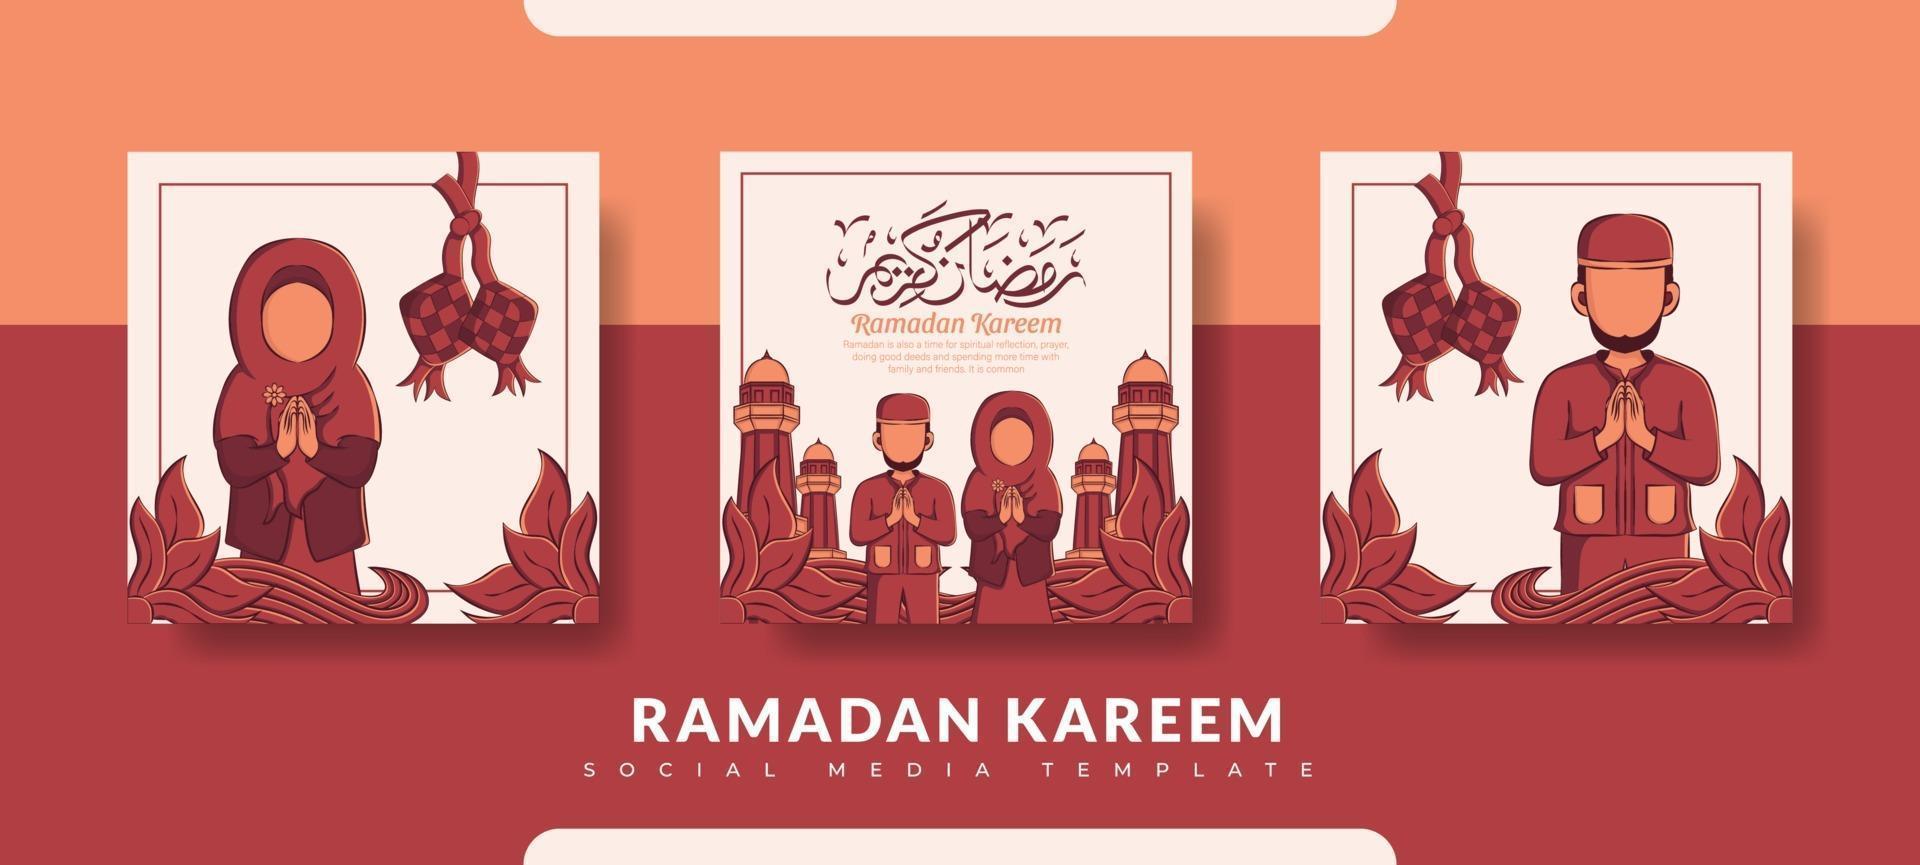 ramadan postmall, sociala medier postmalluppsättning vektor